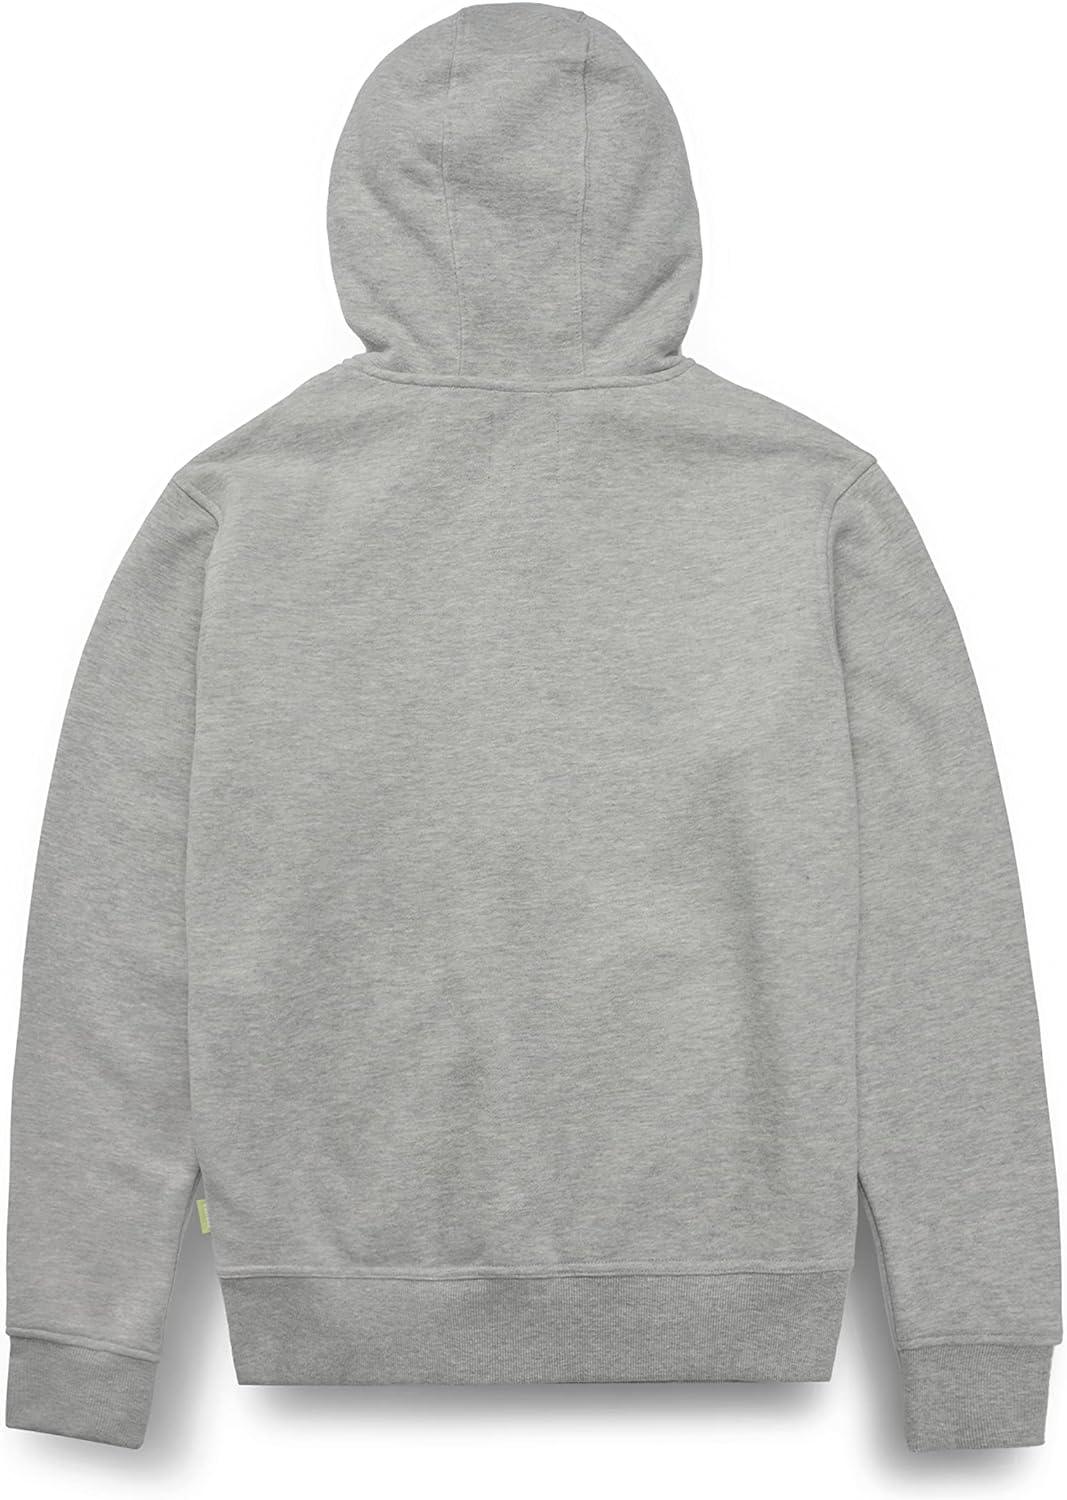 Twitch Zip Up Hoodie Gray, Full-Zip Hooded Sweatshirt, Top Hoodie - Massive Discounts